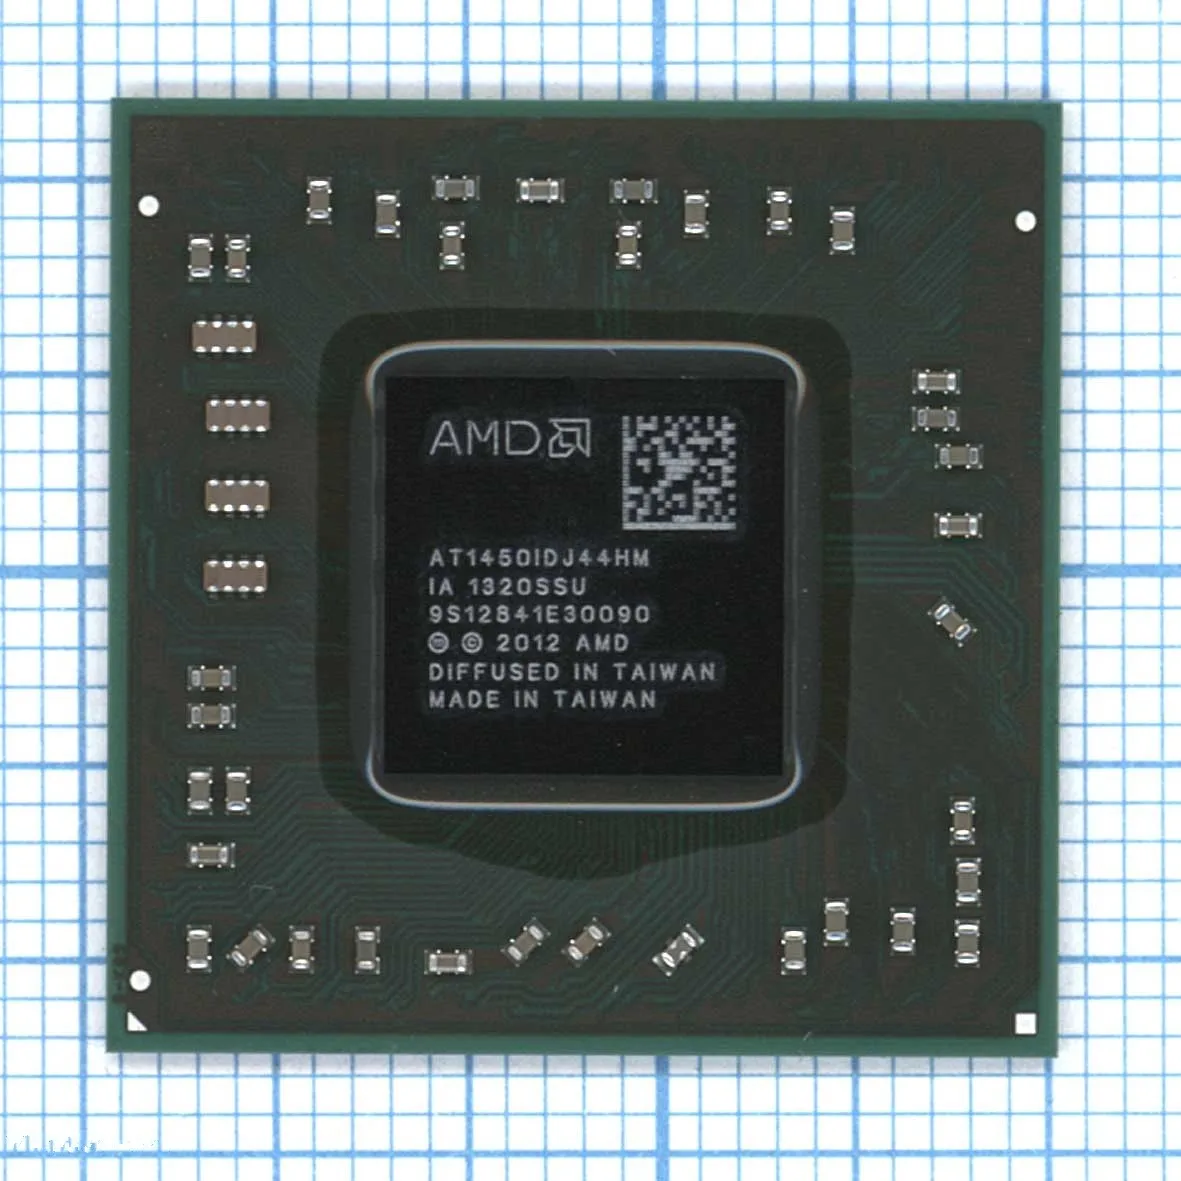 Процессор AMD AT1450IDJ44HM A6-1450 | Компьютеры и офис